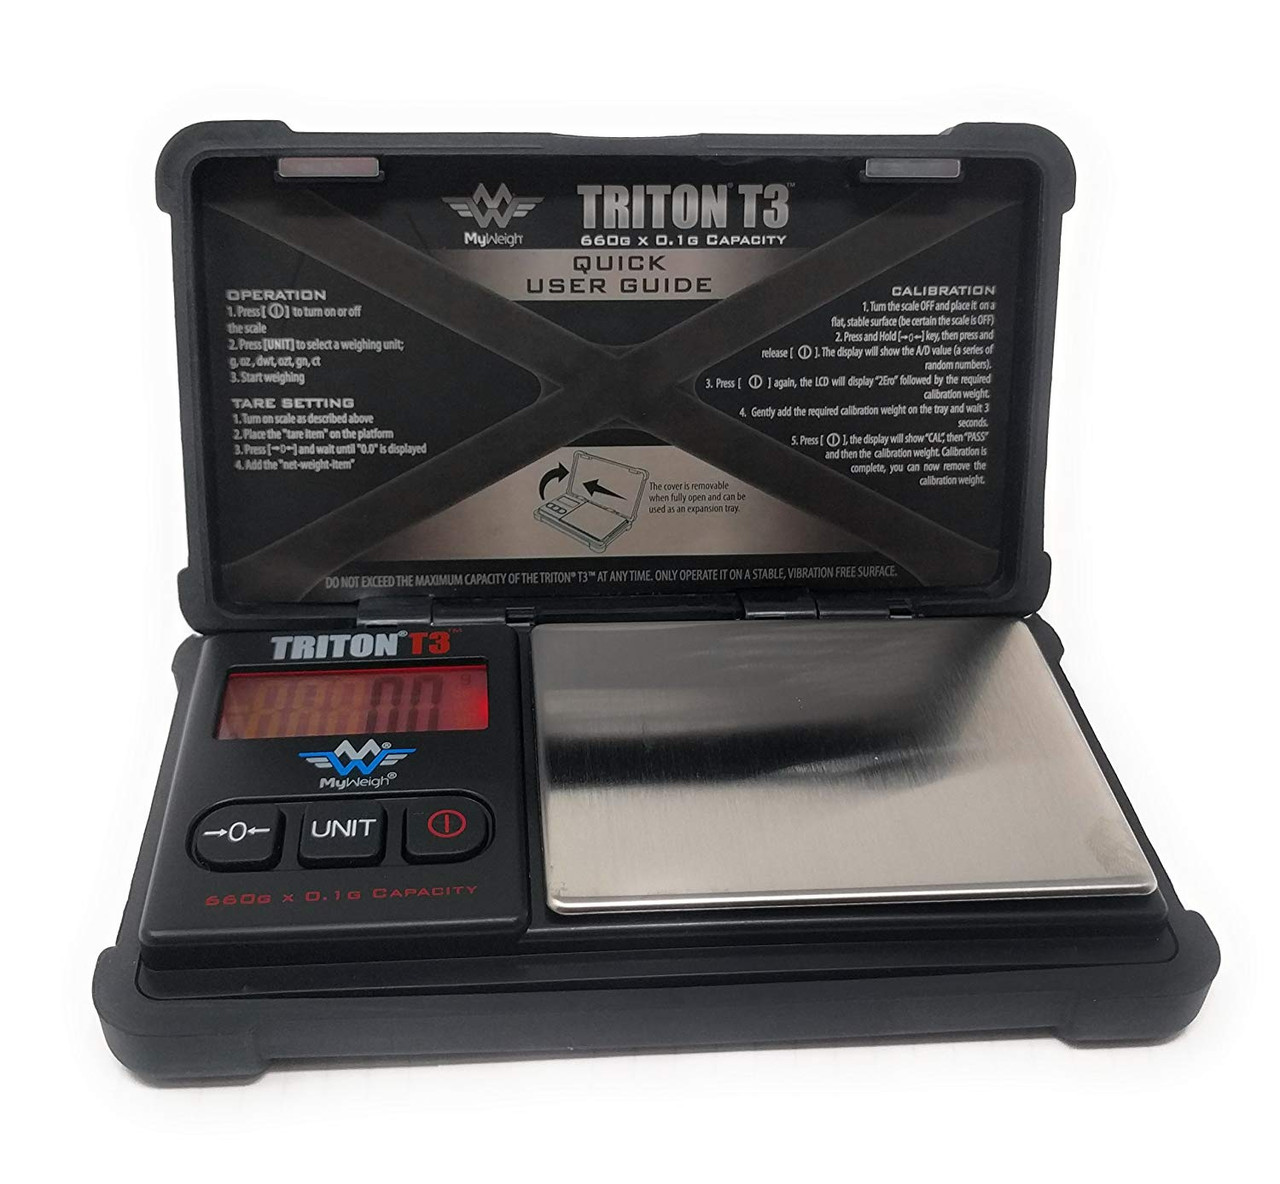 TRITON T2 DIGITAL POCKET SCALE, 300g x 0.1g